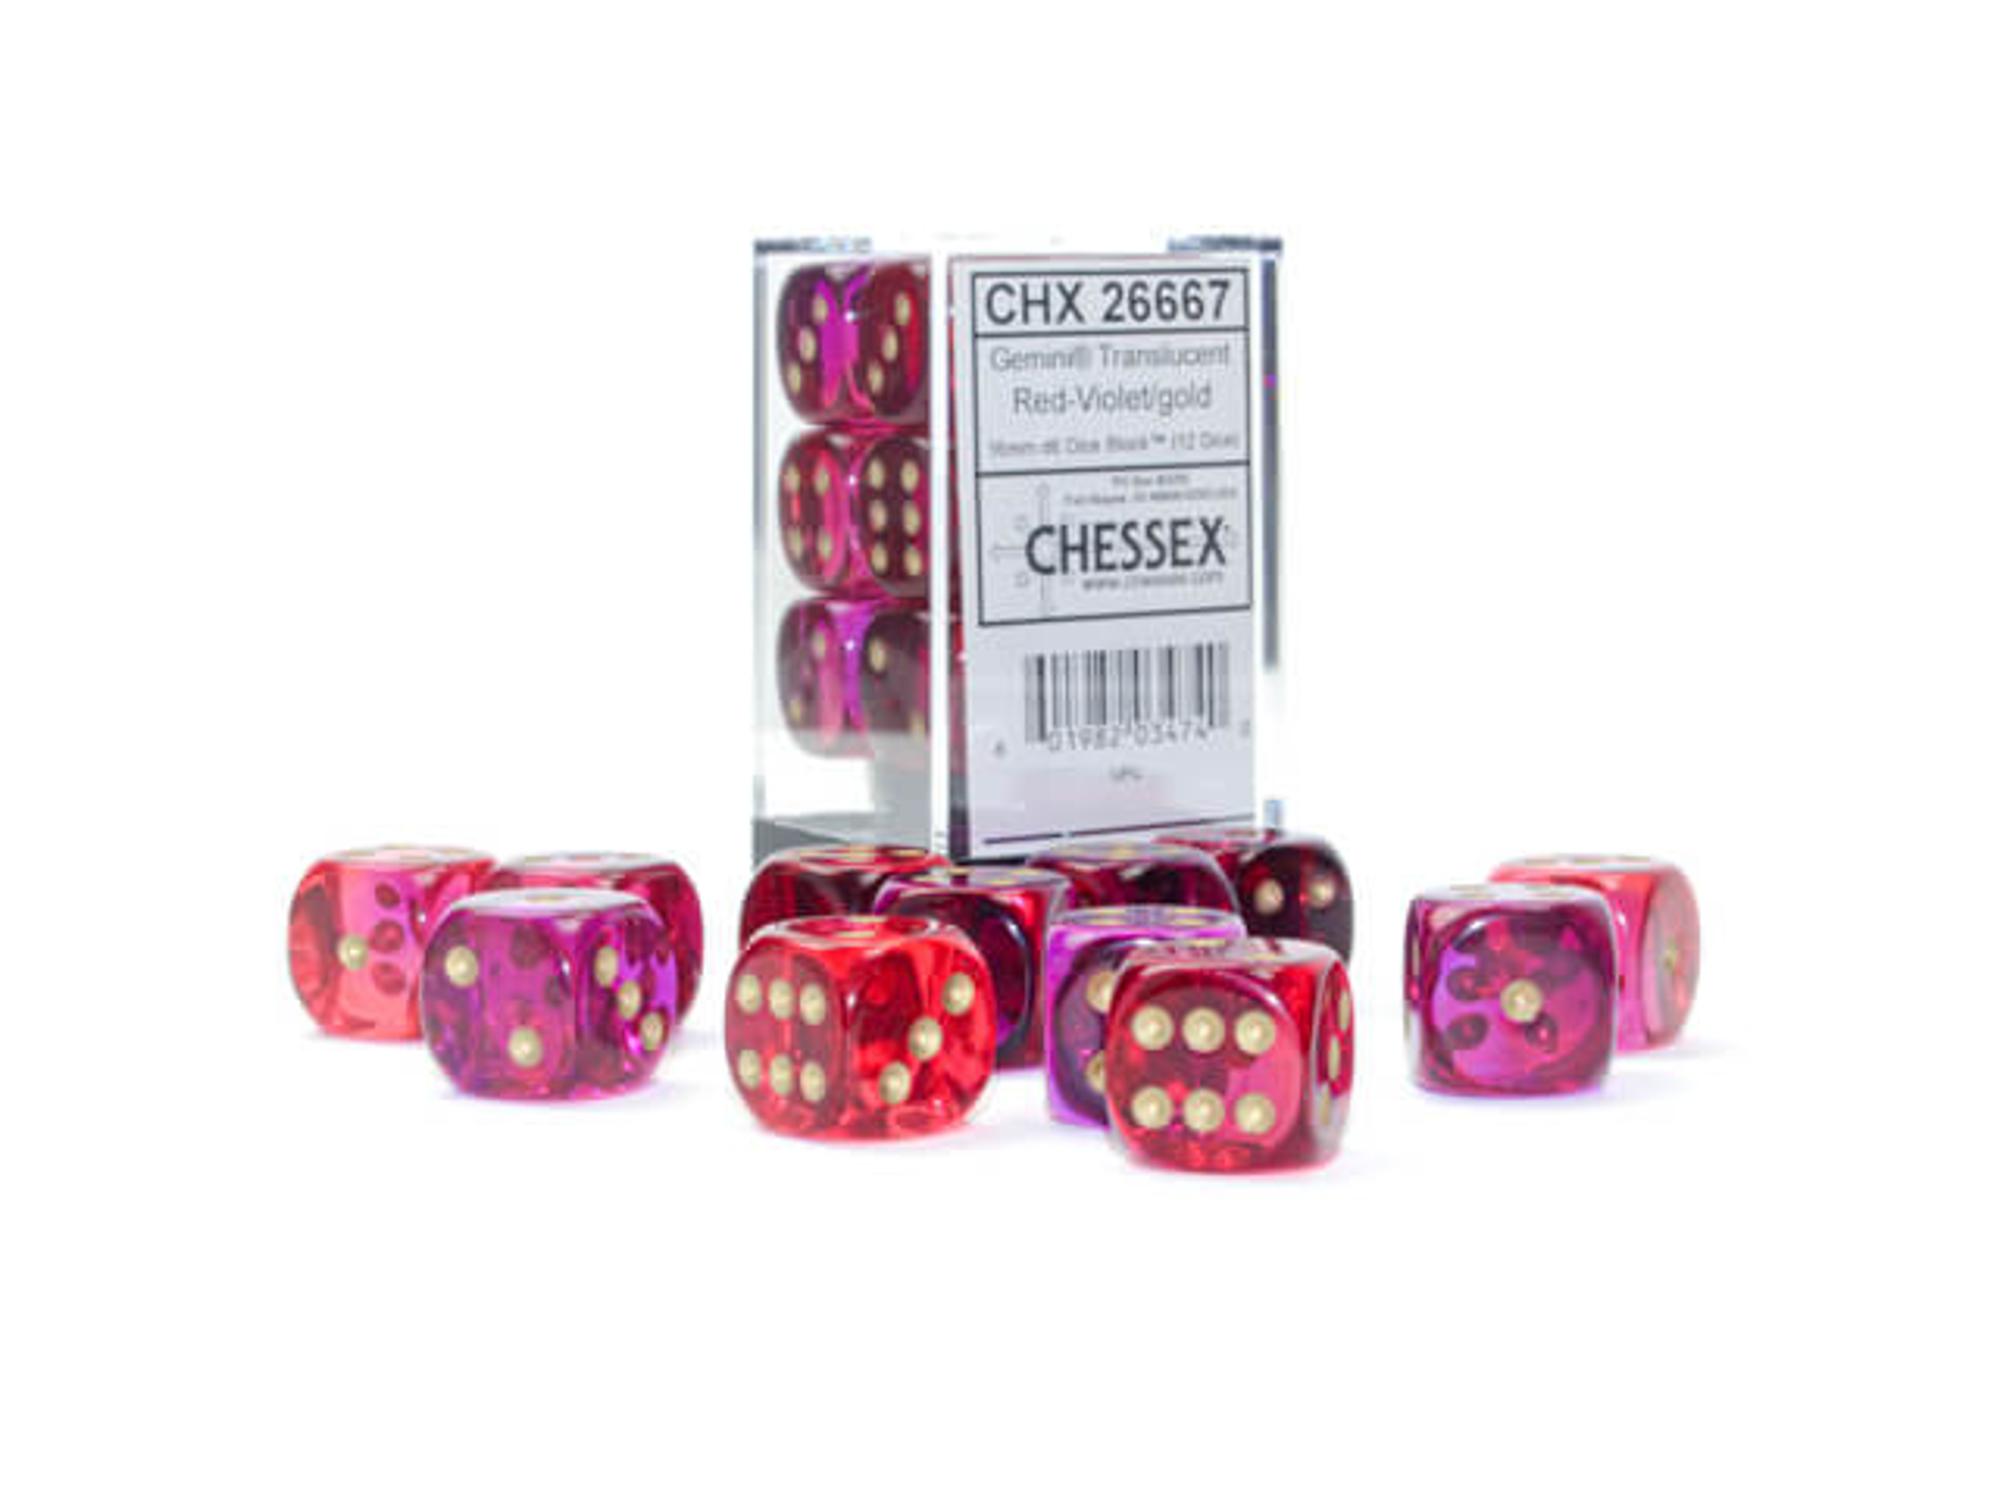 Chessex 16mm Gemini Translucent Red-Violet/Gold D6 Dice Block